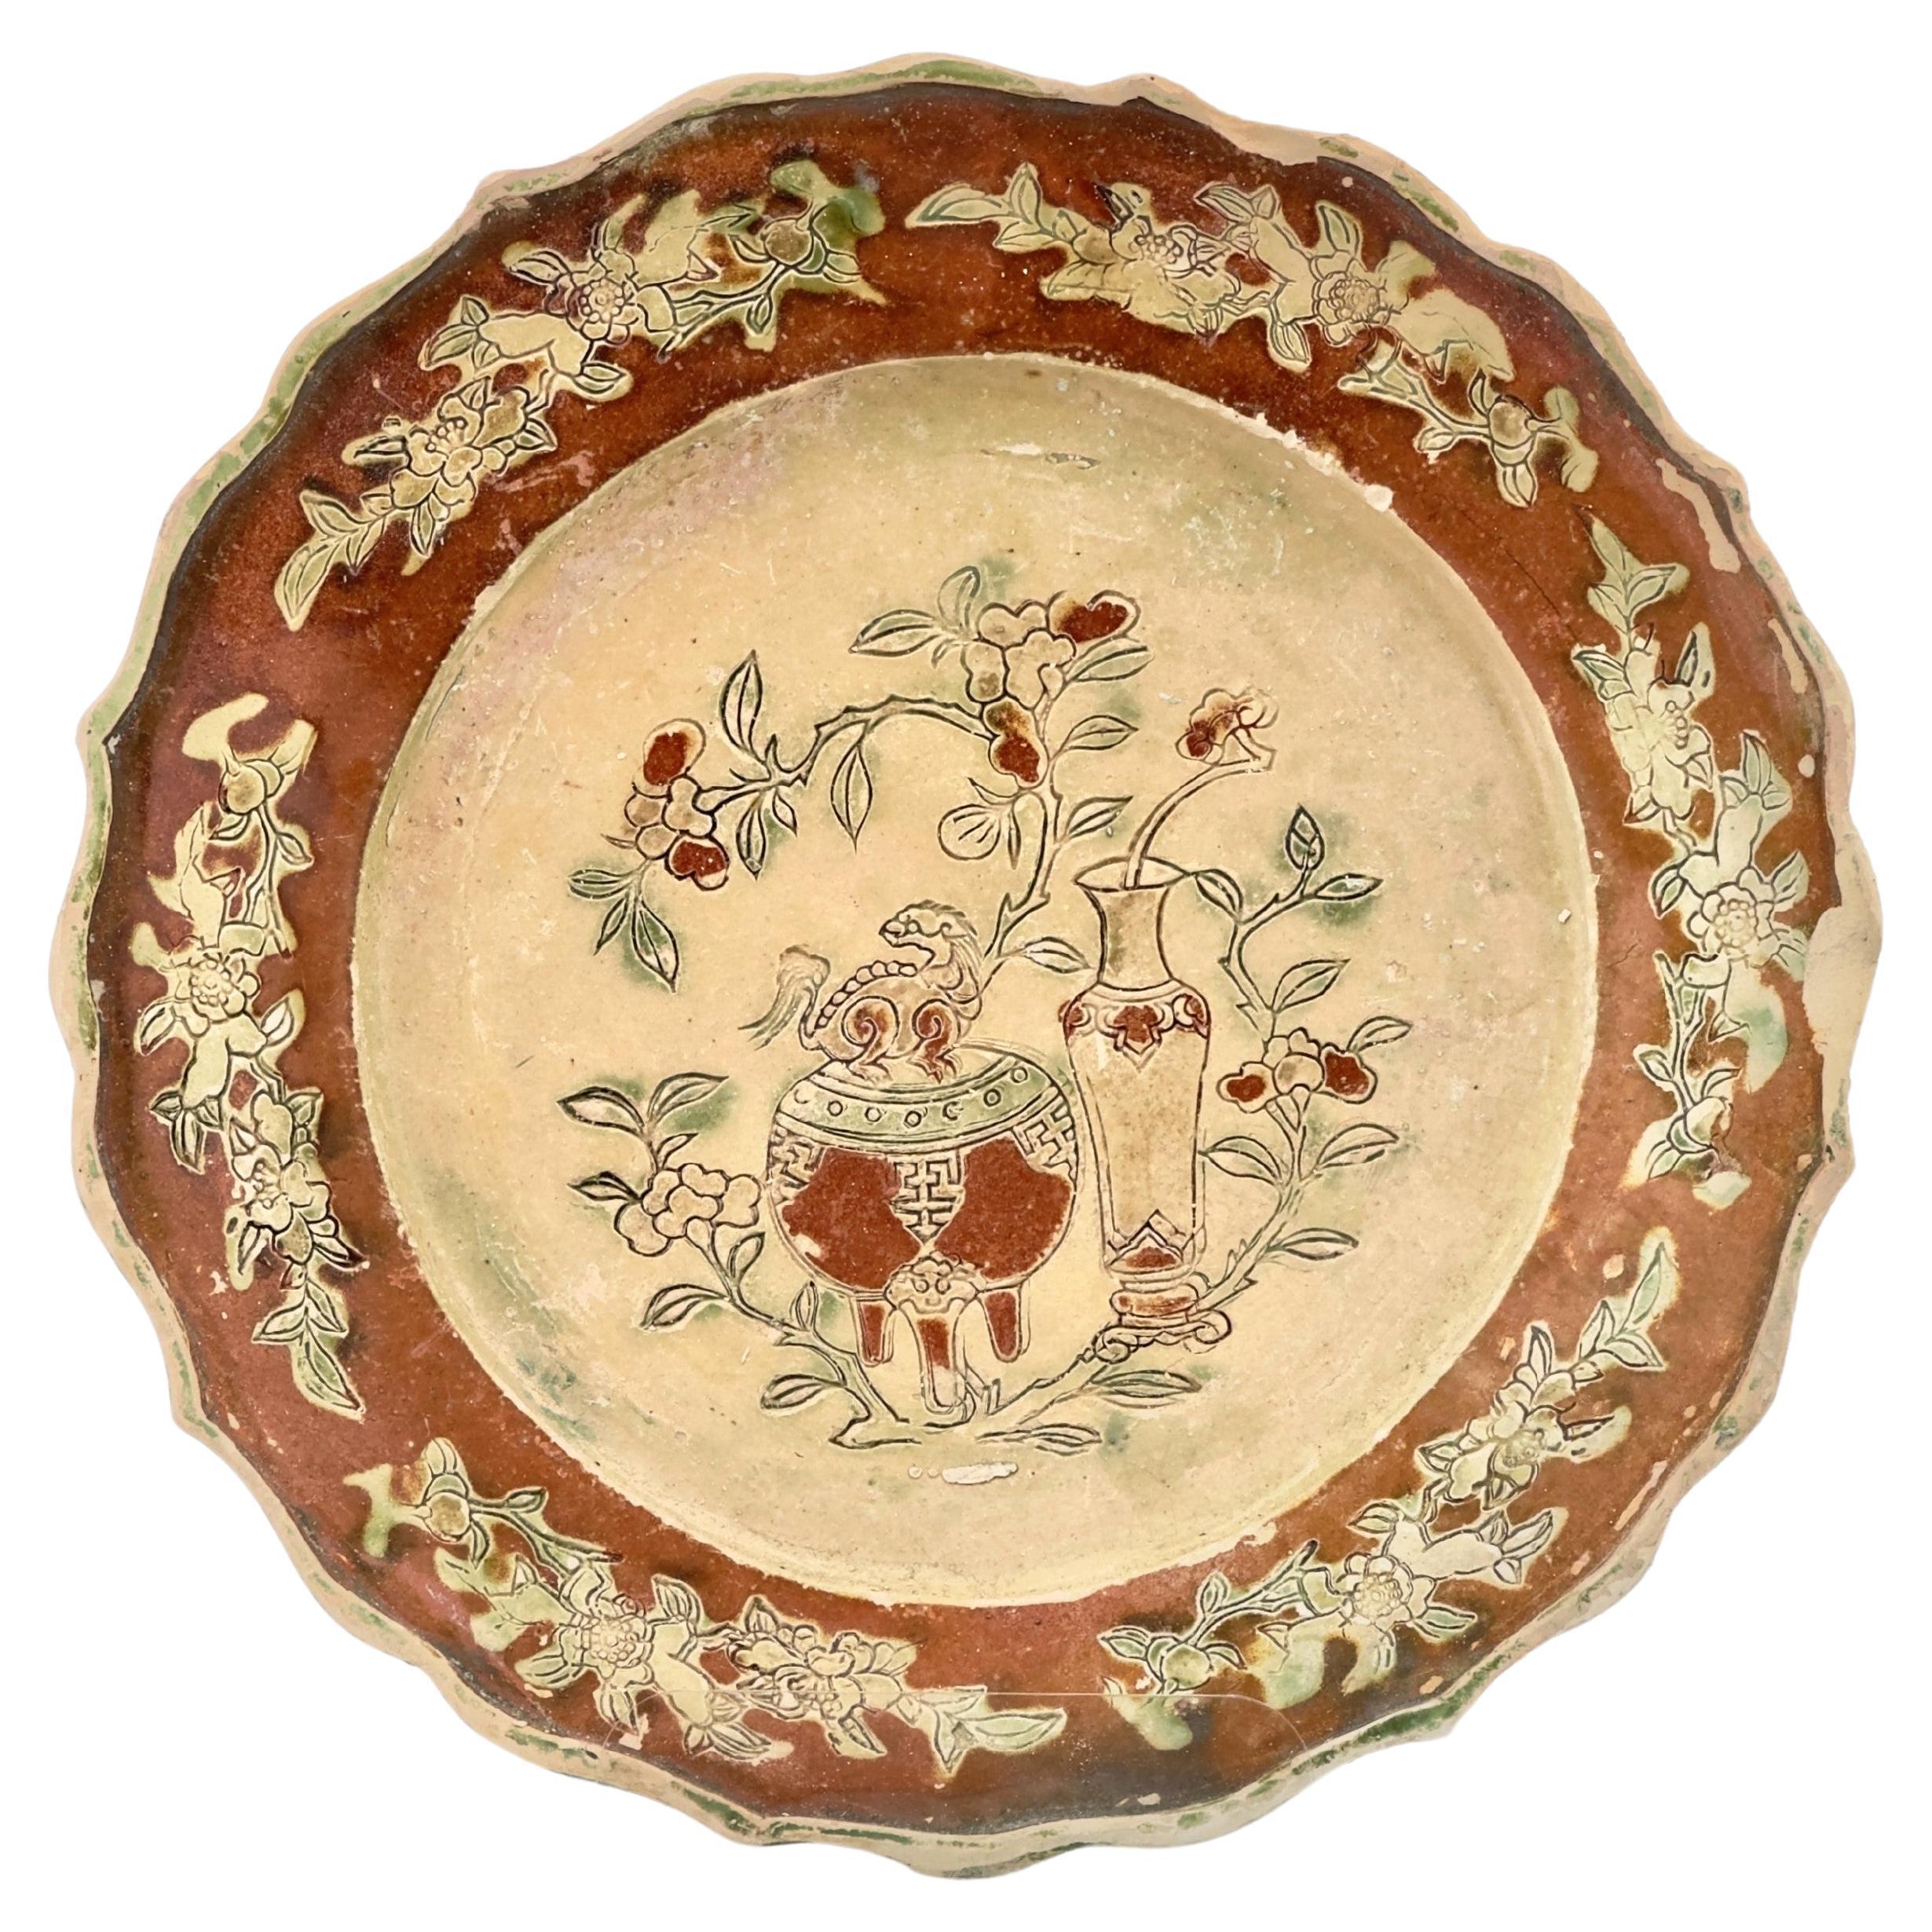 Dreiglasierte Schale aus Steingut, um 1725, Qing Dynasty, Yongzheng Reign